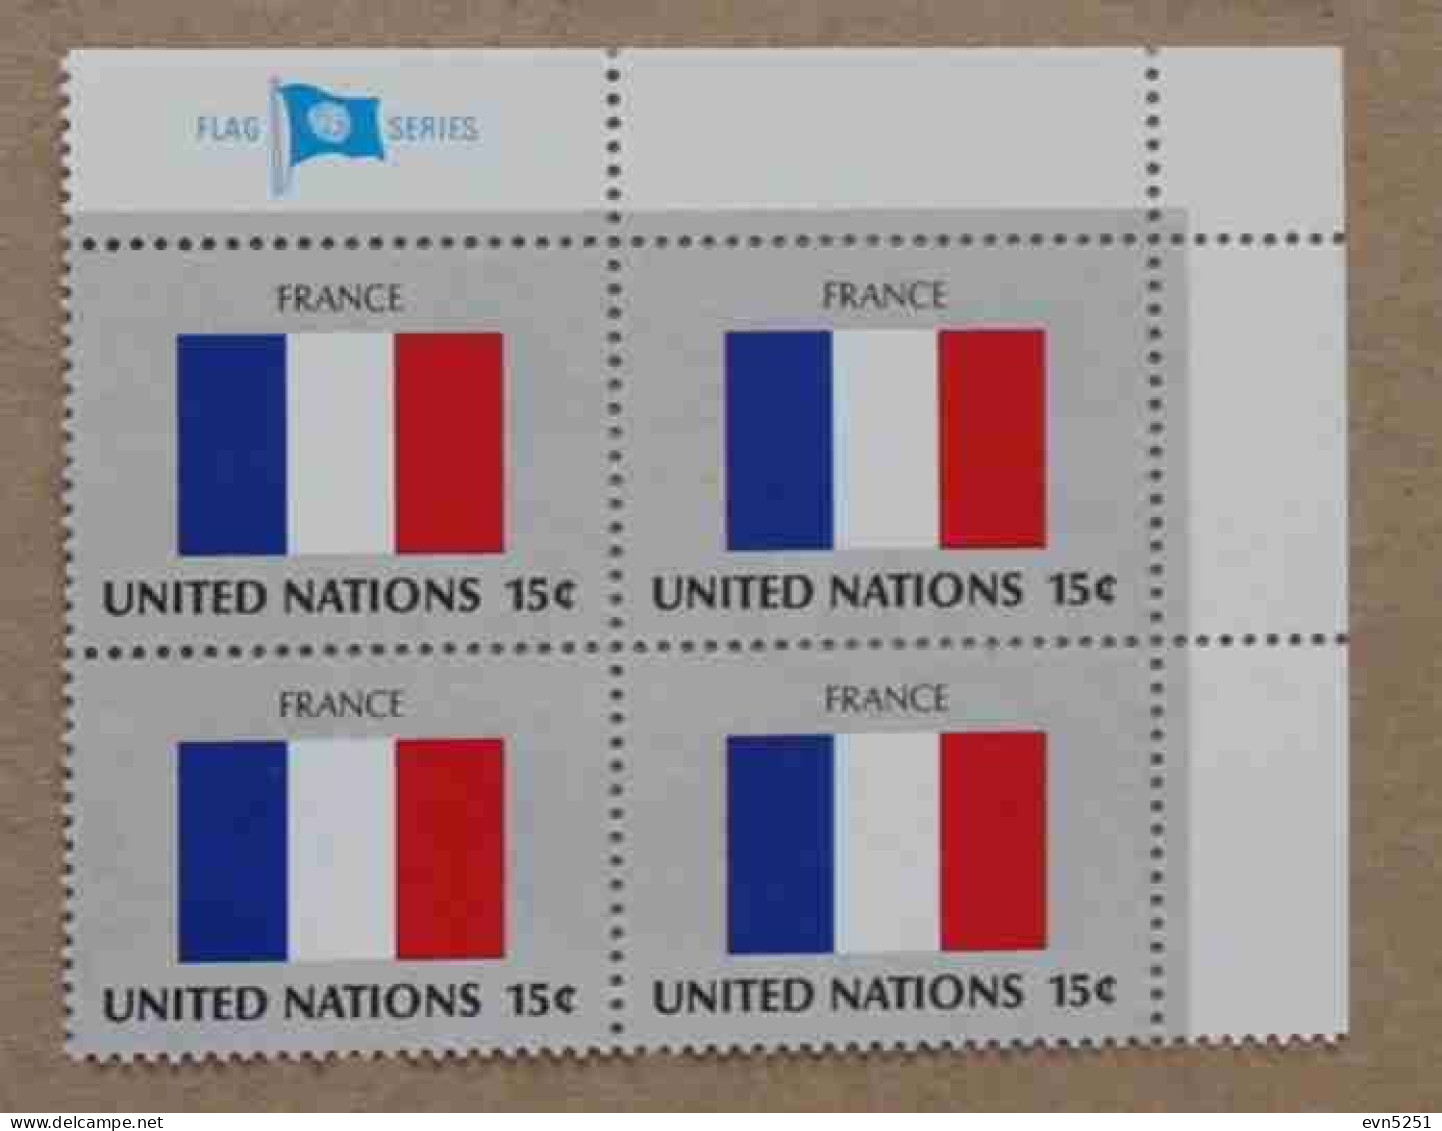 Ny80-02 : Nations-Unies (N-Y) - Drapeaux Des Etats Membres De L'ONU, France Avec Une Vignette "FLAG SERIES" - Neufs